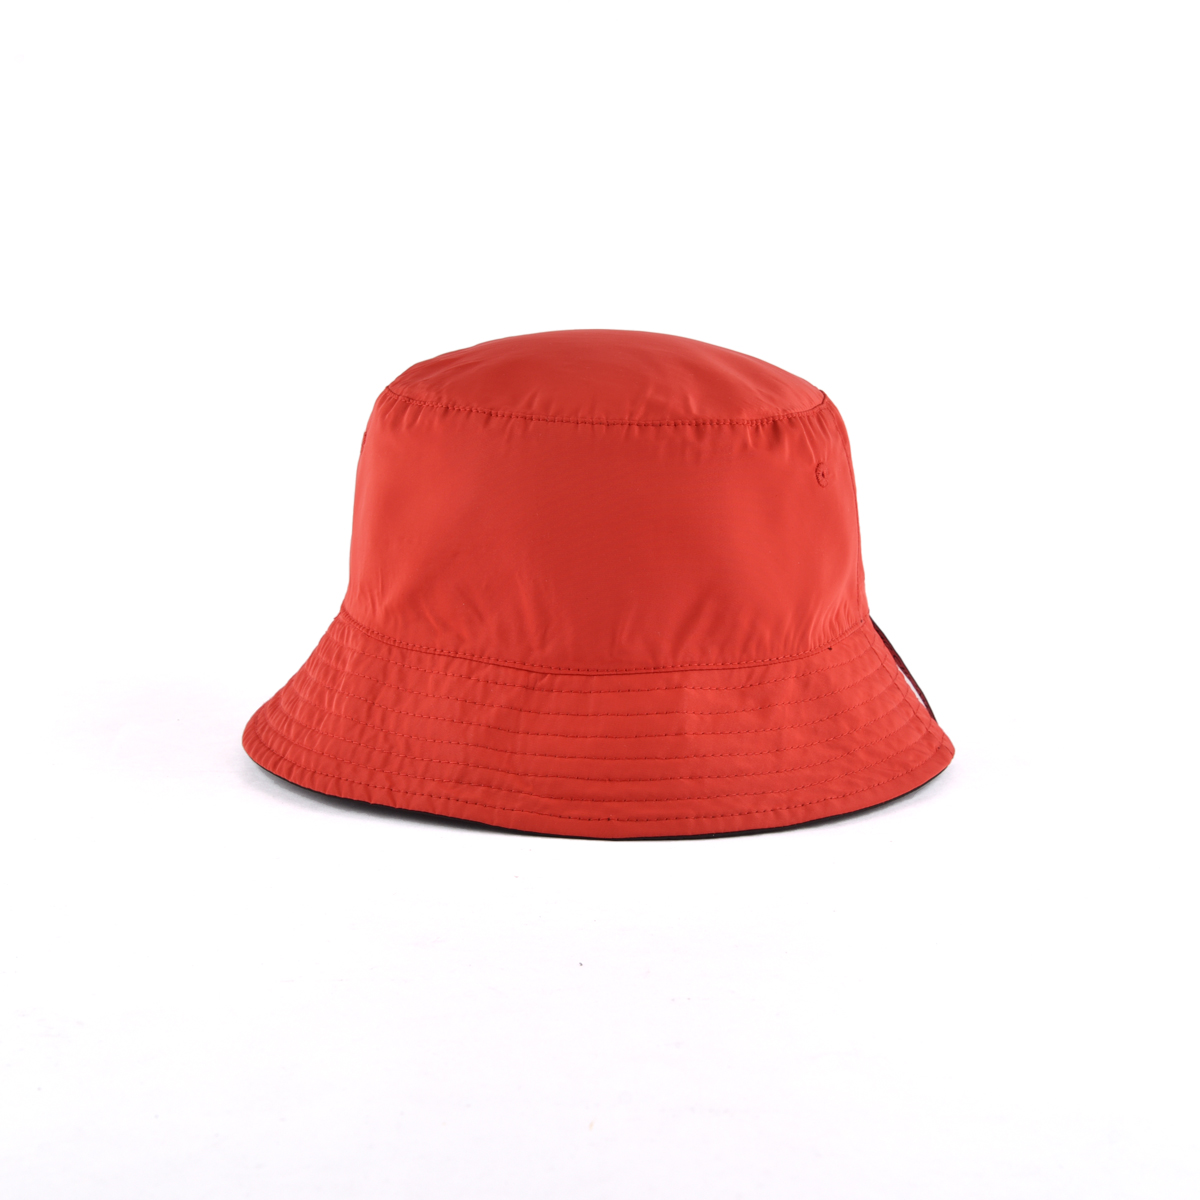 AungCrown wide brim simple plain black windproof bucket hat